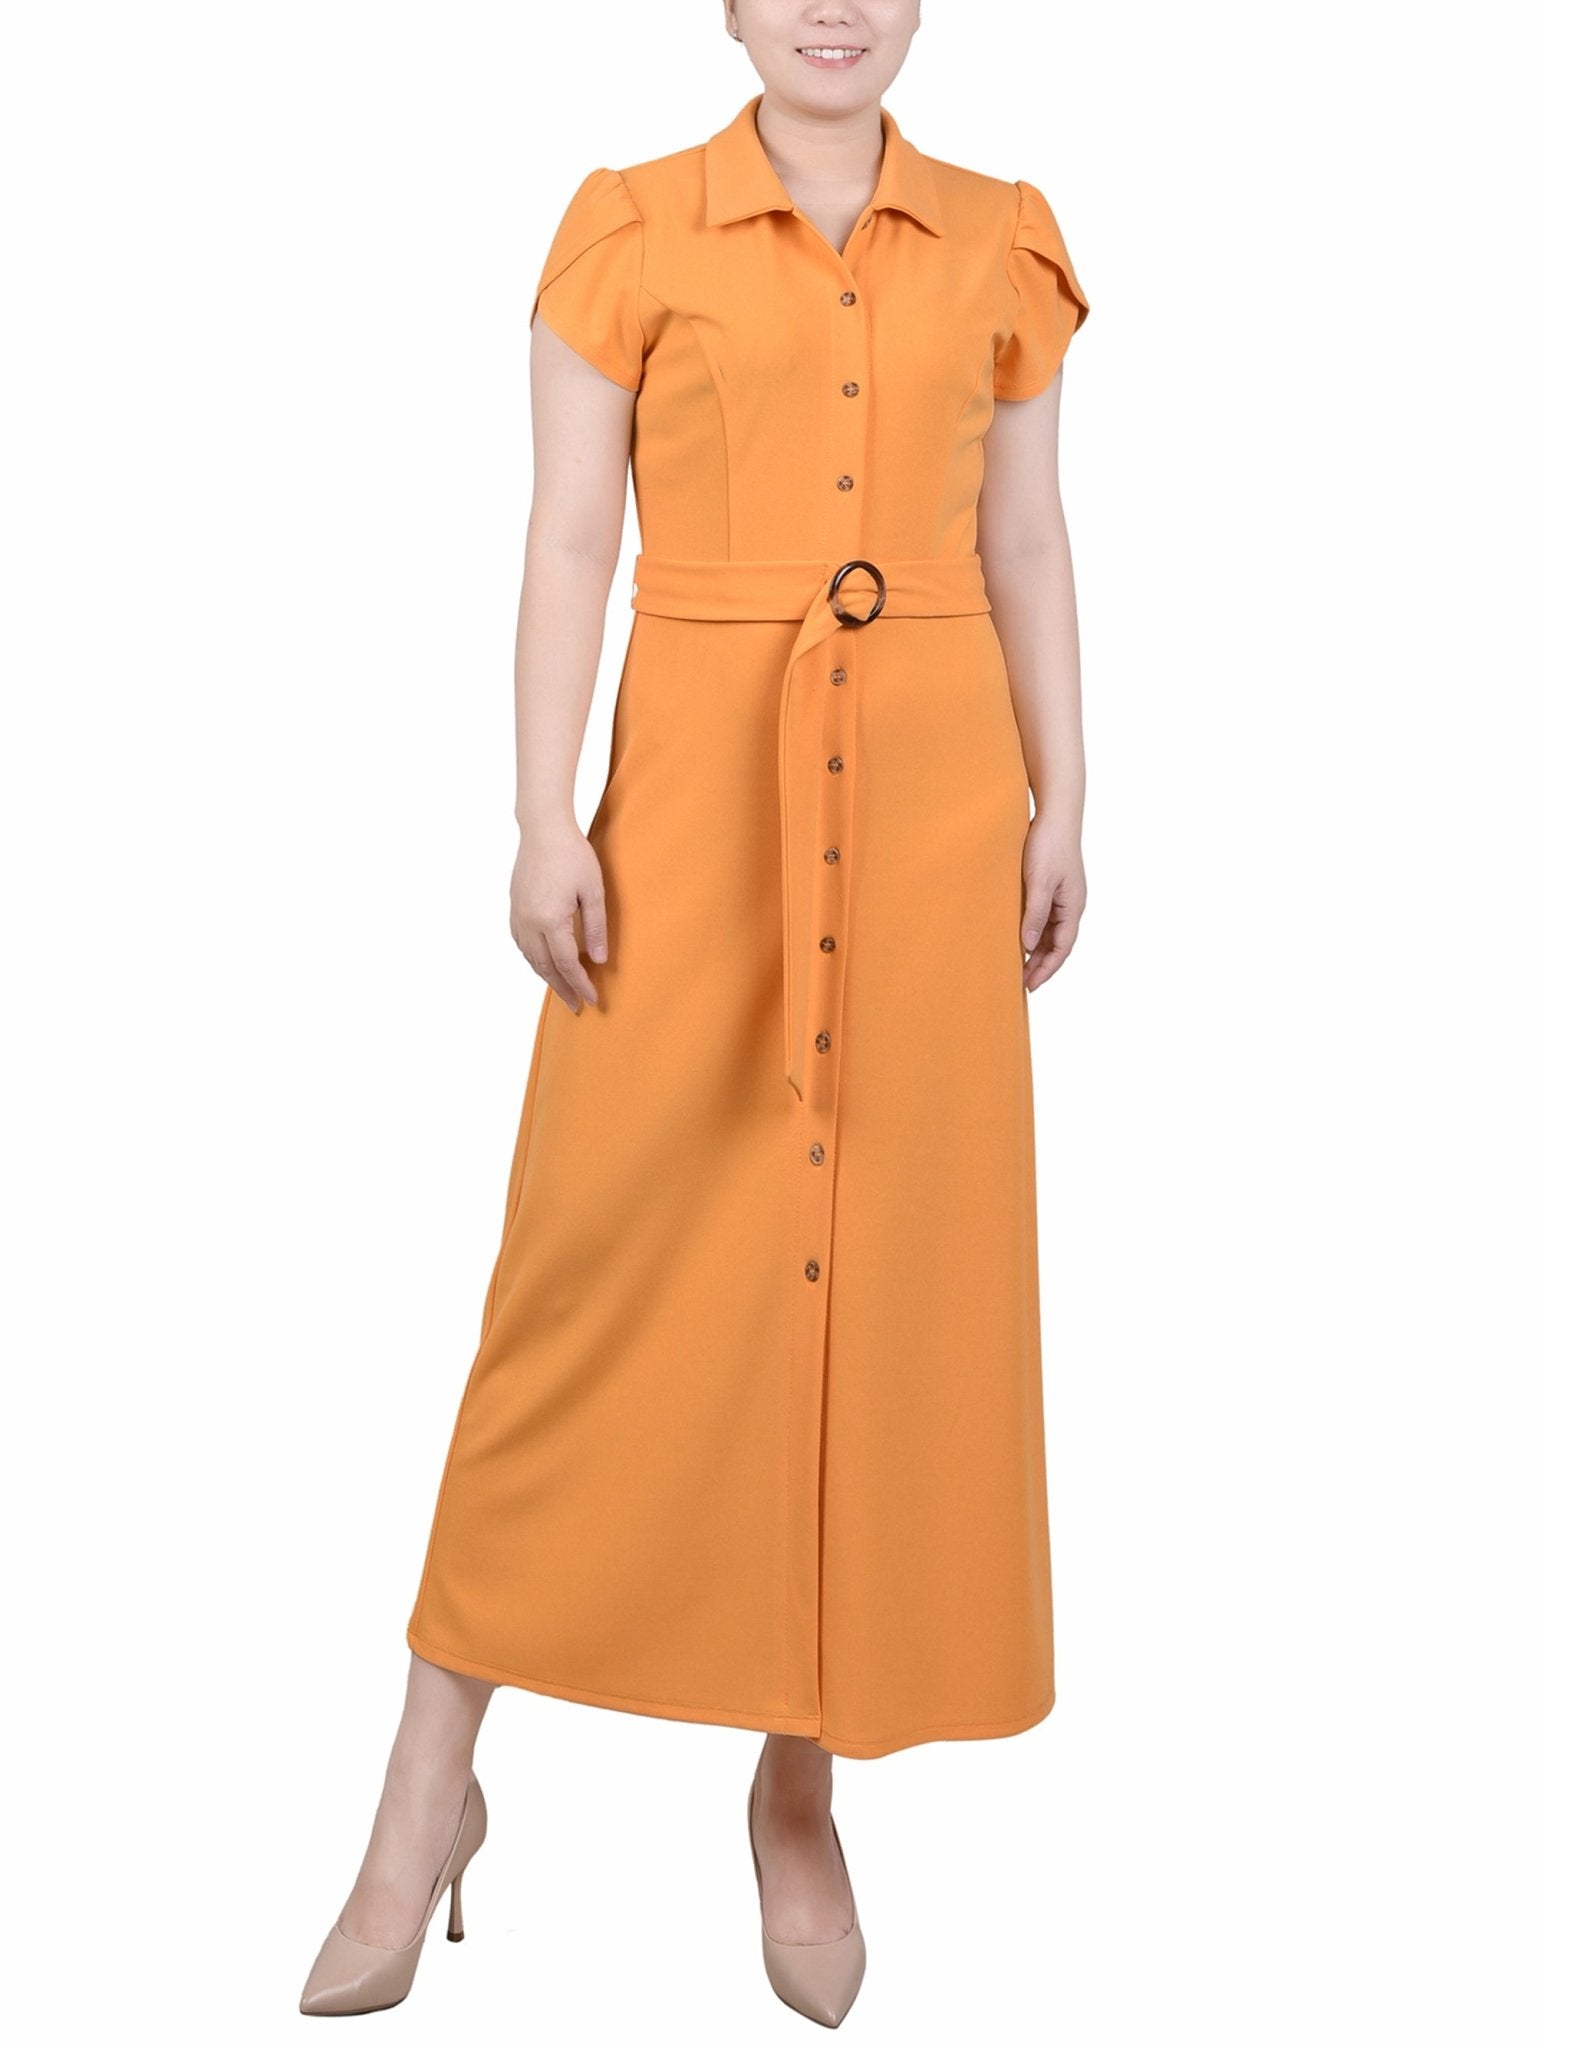 Midi Petal Sleeve Dress - Petite - DressbarnDresses